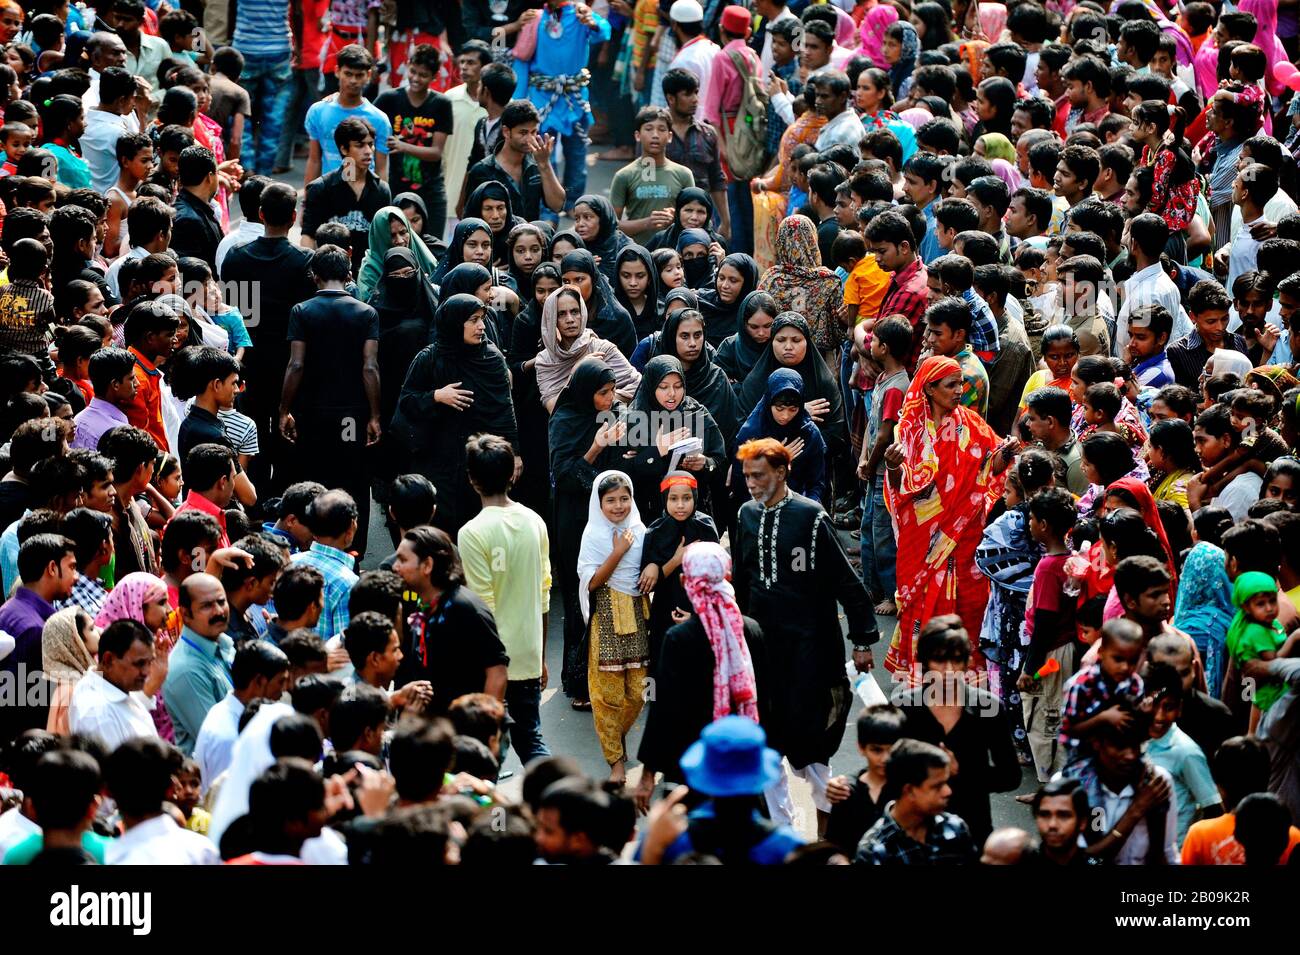 Tausende schiitische Muslime karrten am 10. Tag des heiligen Monats Muharram eine Trauerprozession der heiligen Ashura aus. Ashura markiert das Martyrium von Hazrat Imam Hassan und Hussain, den großen Söhnen des Propheten Mohammed, die in einer Schlacht getötet wurden. Dhaka, Bangladesch. Dezember 2011. Stockfoto